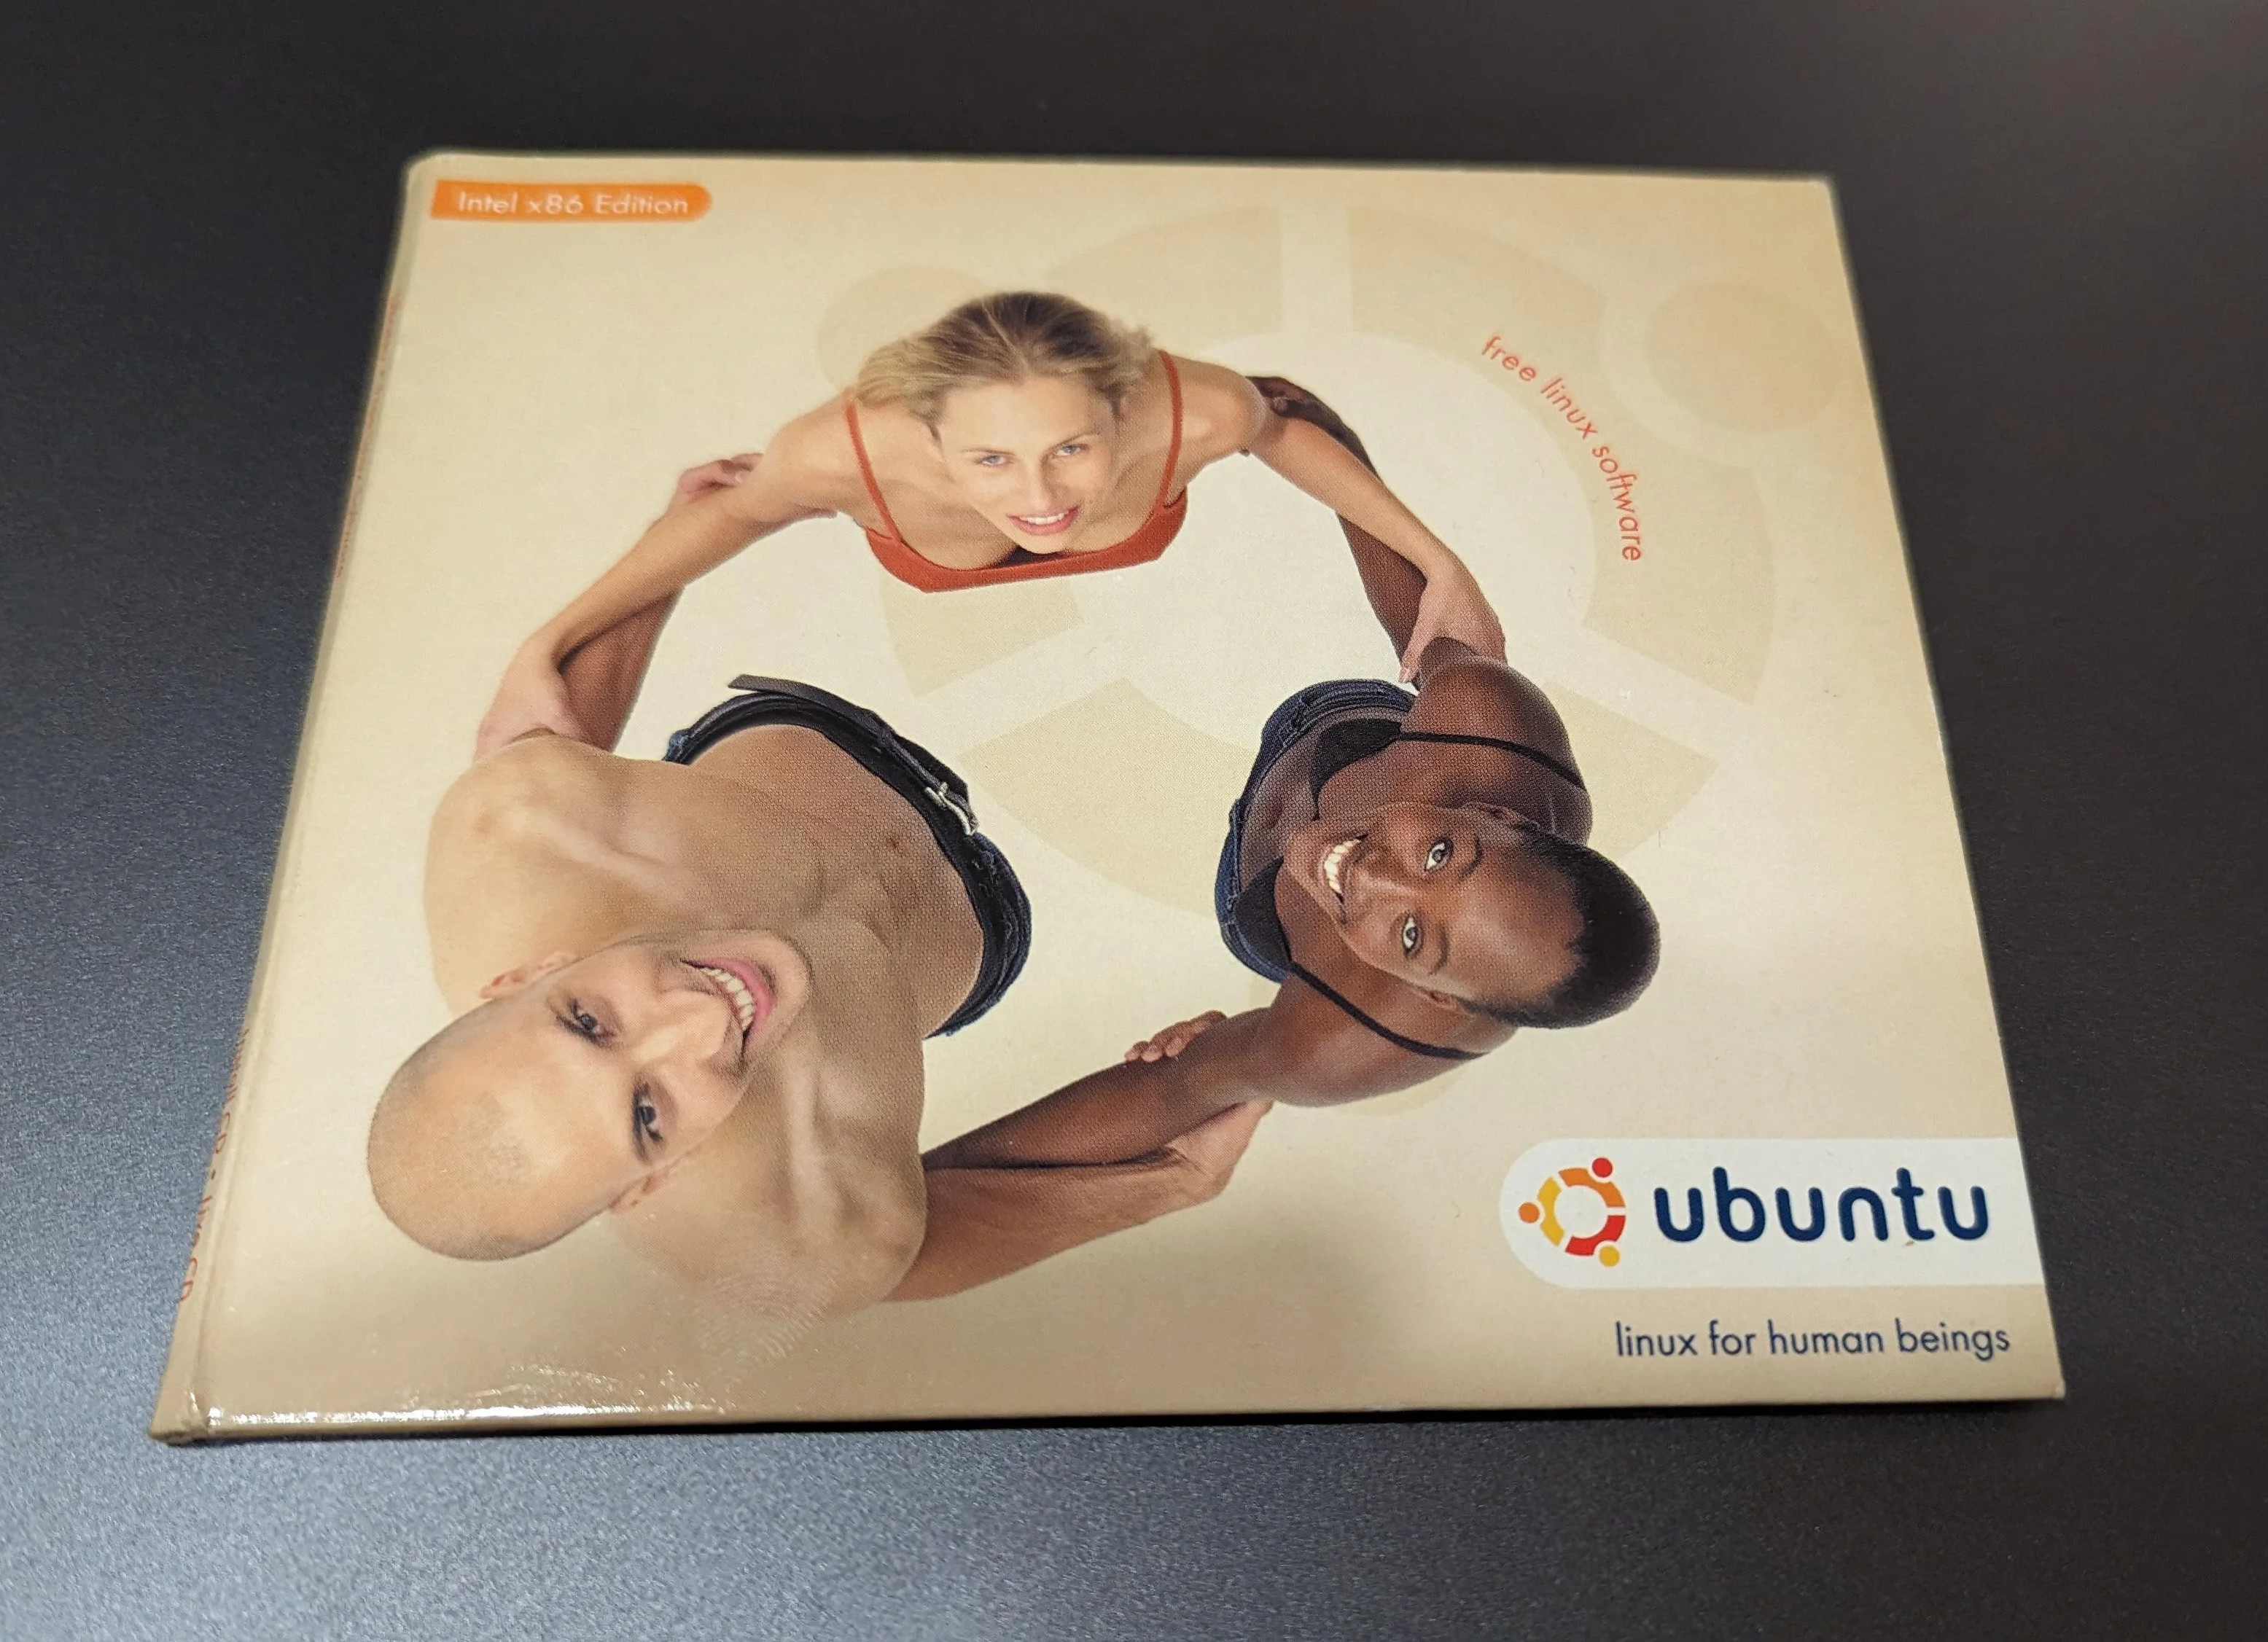 Canonical fête ses 20 ans : comment Ubuntu a changé le monde de Linux